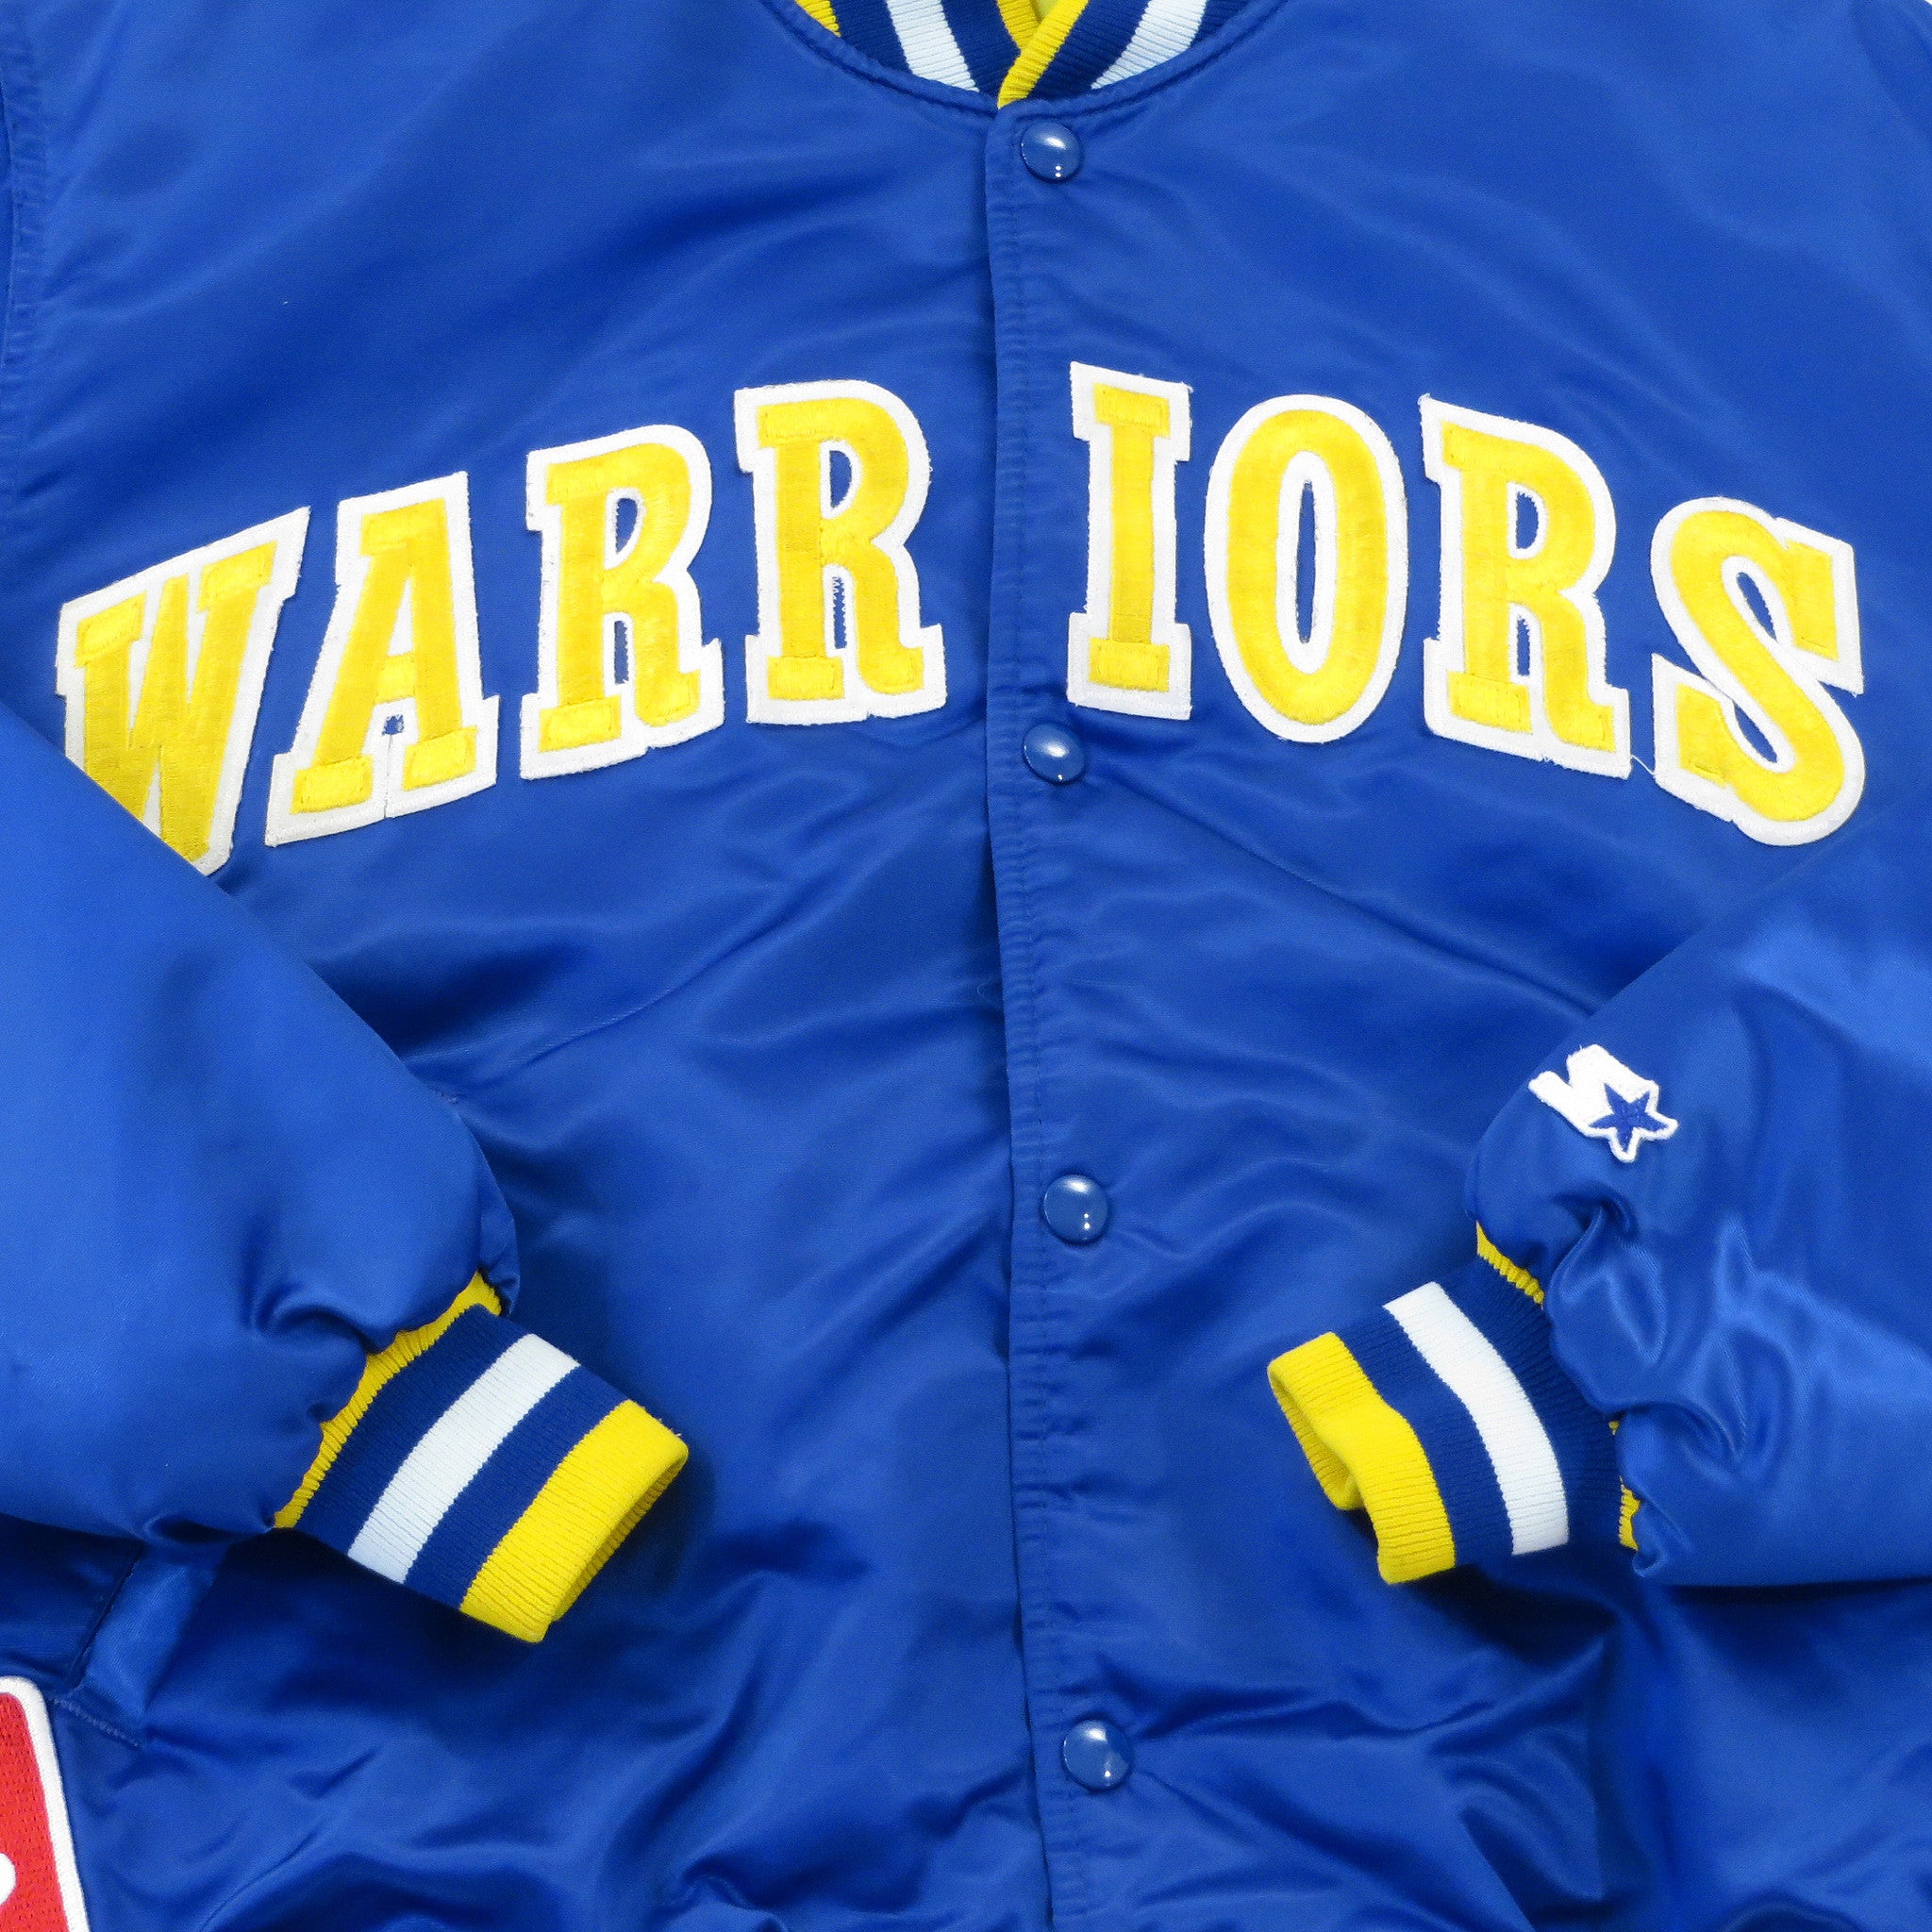 Vintage Starter Golden State Warriors Satin Jacket